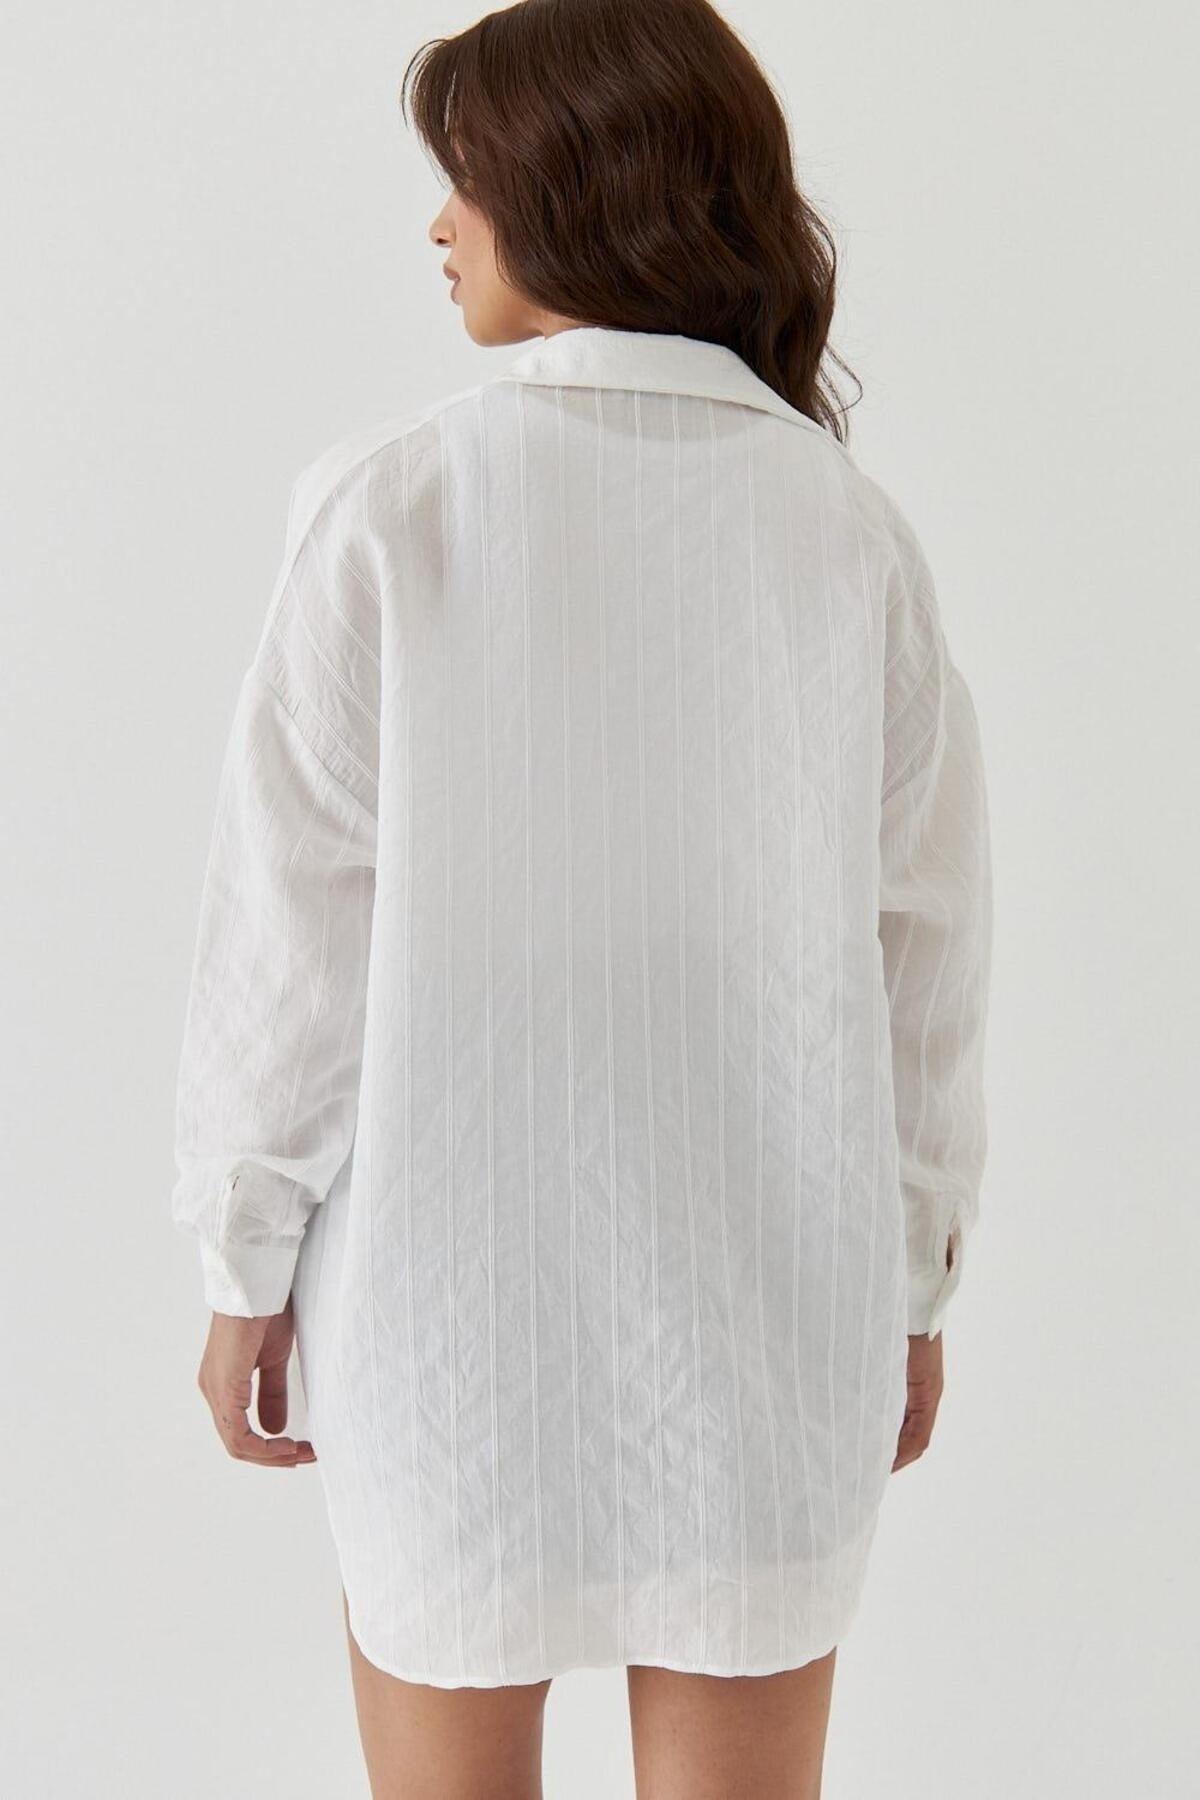 Striped White Women's Shirt - Swordslife